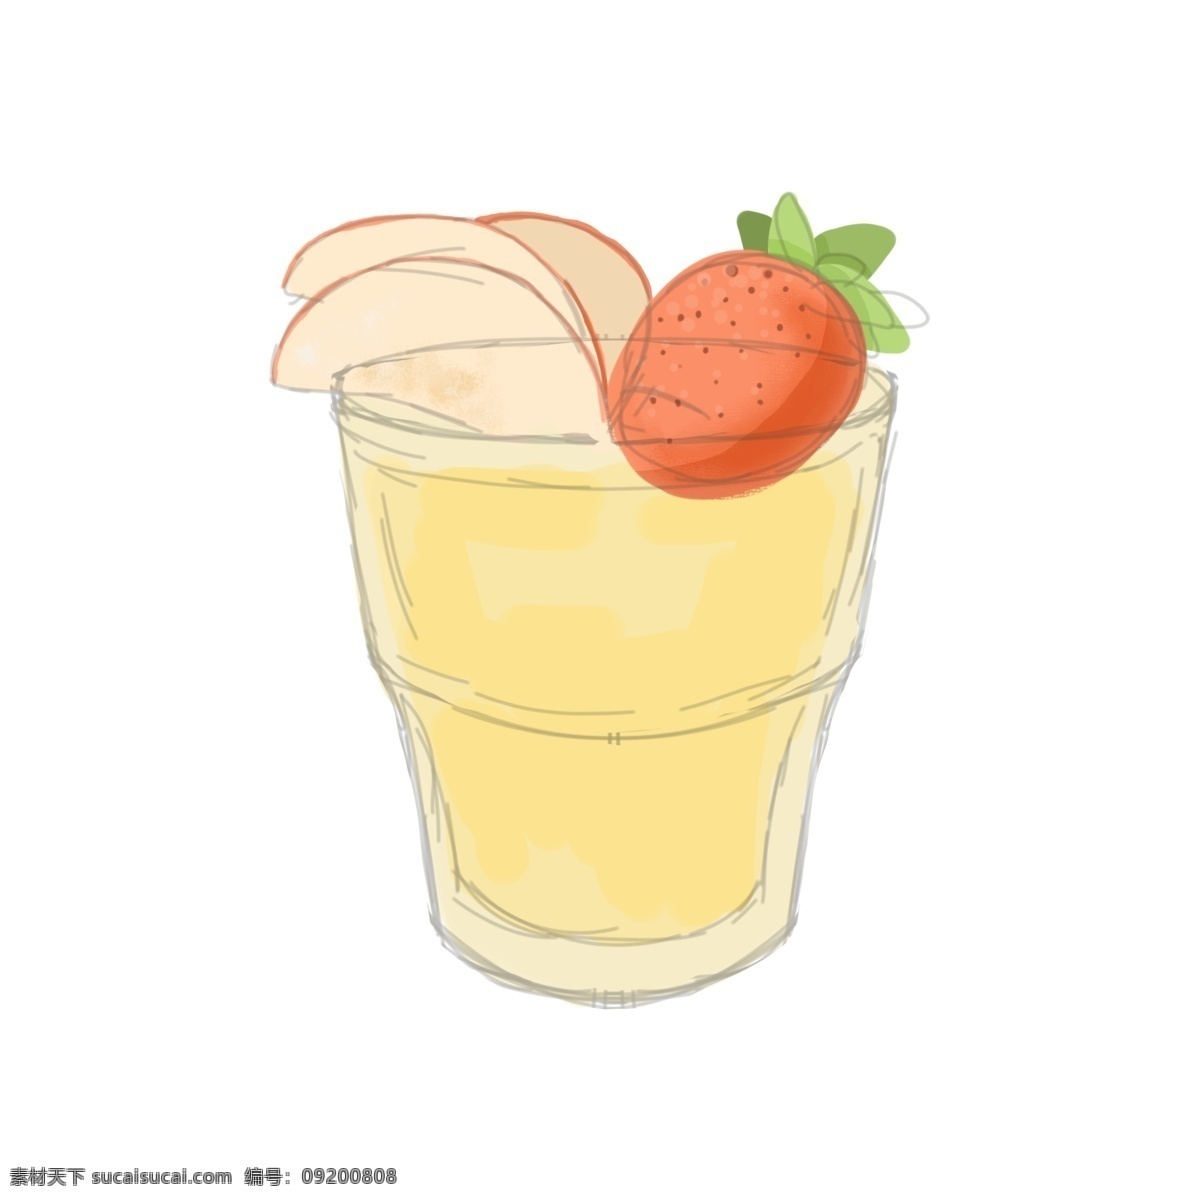 水果果汁 夏日 凉爽 简洁 卡通 果汁 饮料 水果